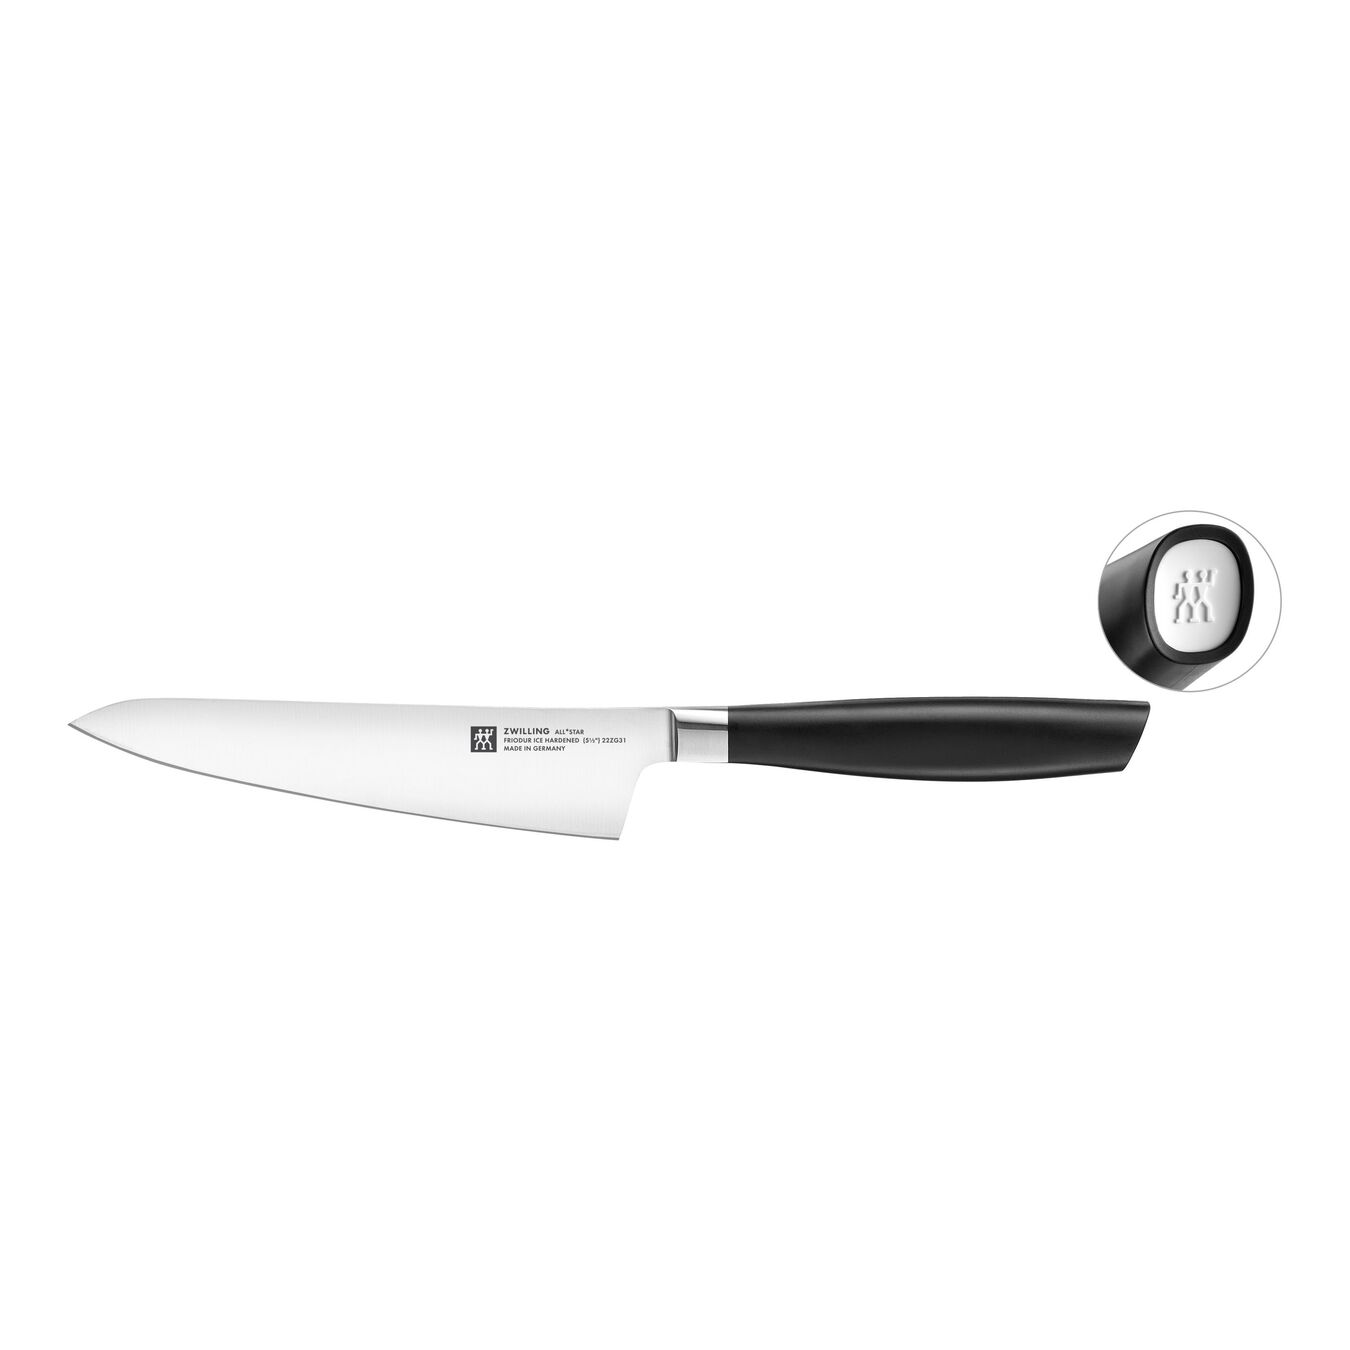 Couteau de chef compact 14 cm, Blanc,,large 1